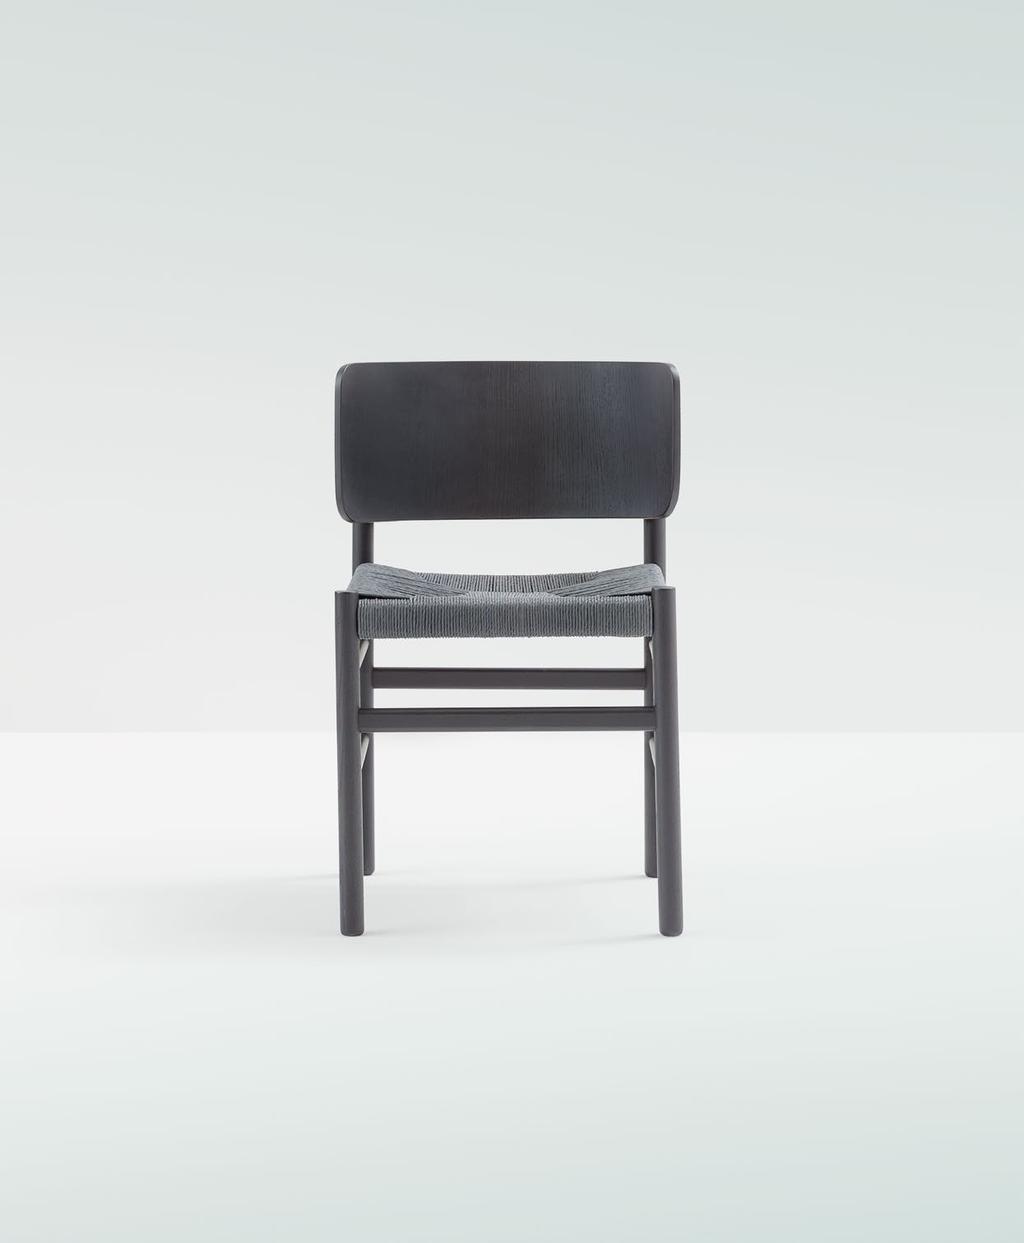 fratina chair armchair design Emilio Nanni year 2015 La quadratura del cerchio.